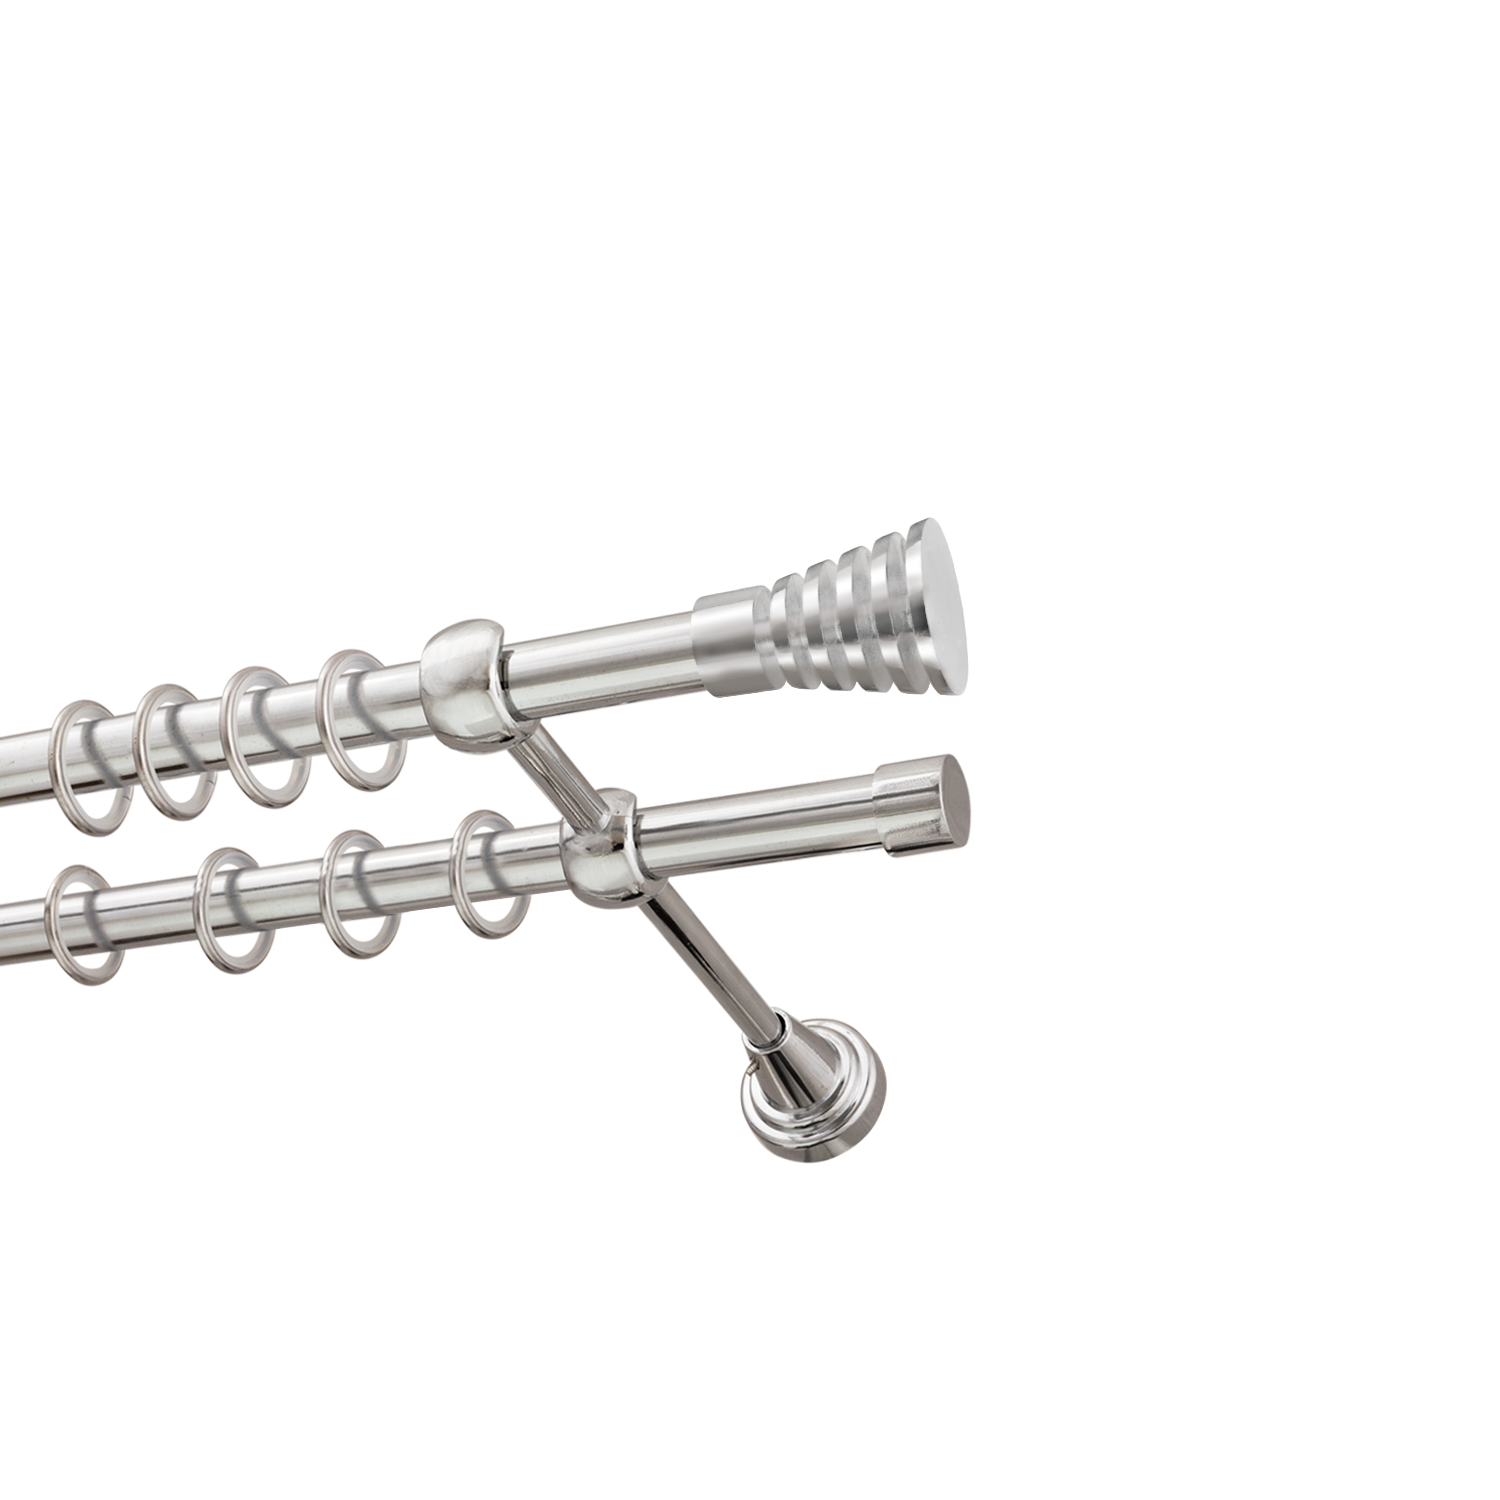 Металлический карниз для штор Верона, двухрядный 16/16 мм, серебро, гладкая штанга, длина 140 см